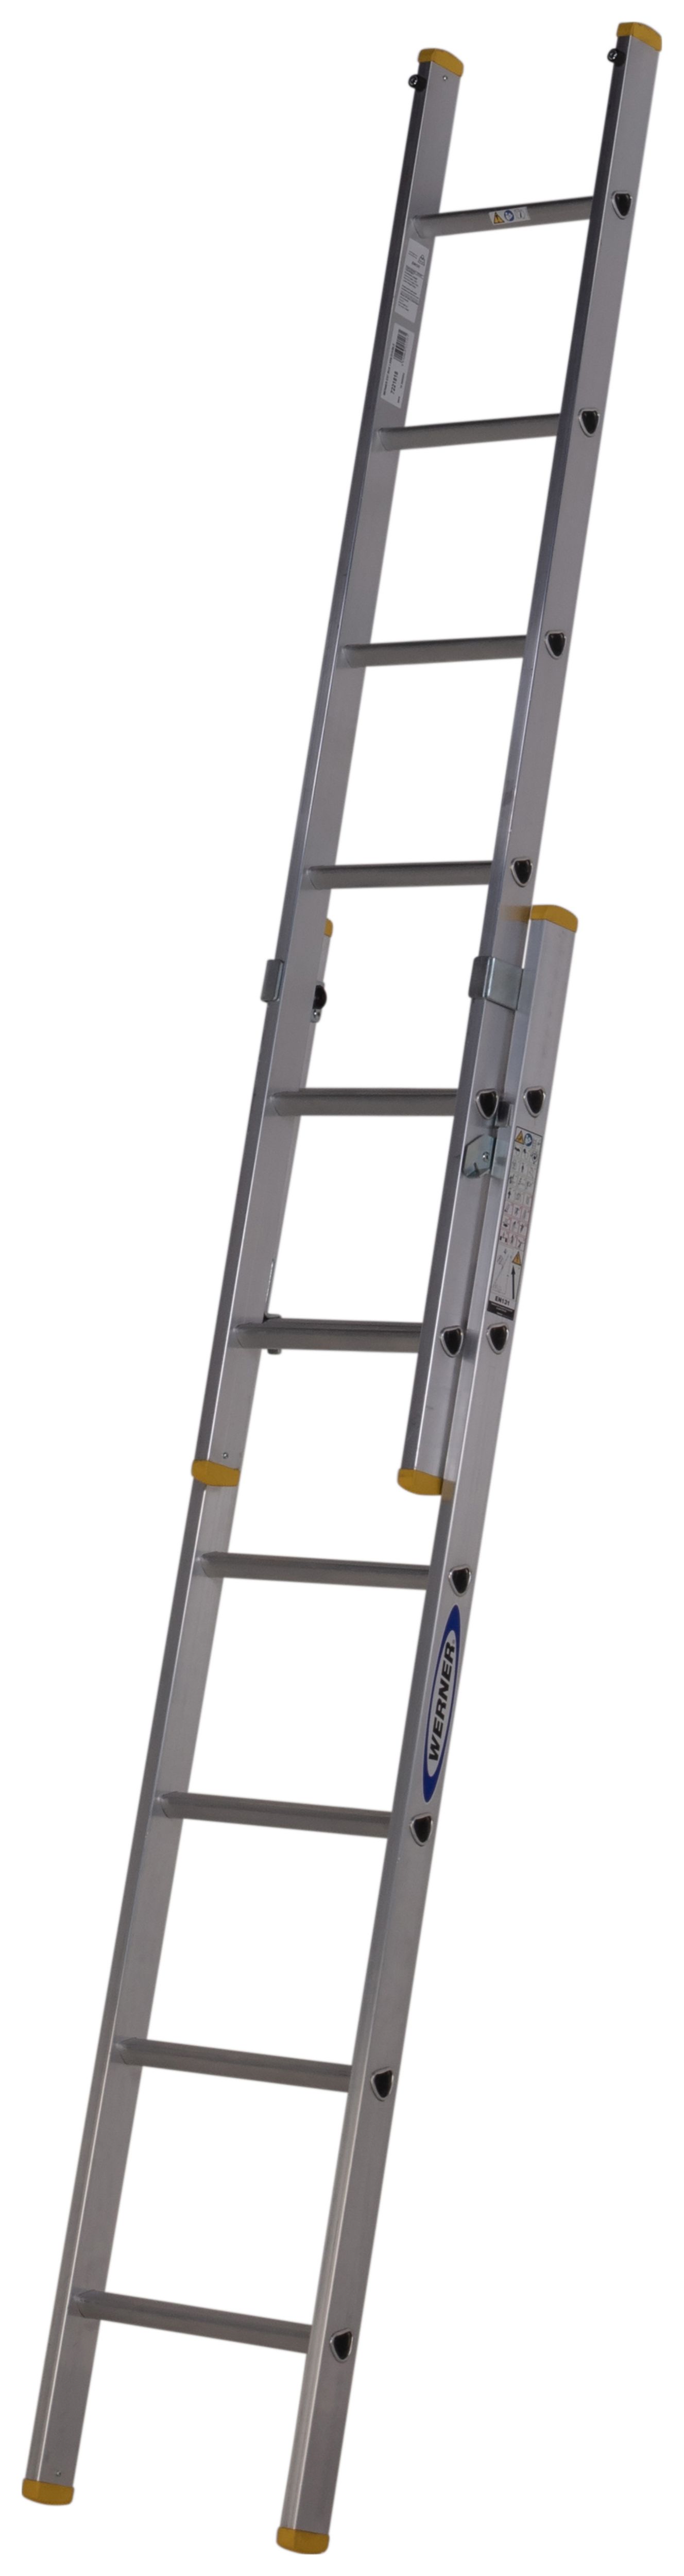 Werner D Rung 2 Section High Grade Aluminium Extension Ladder - Max Height 2.95m